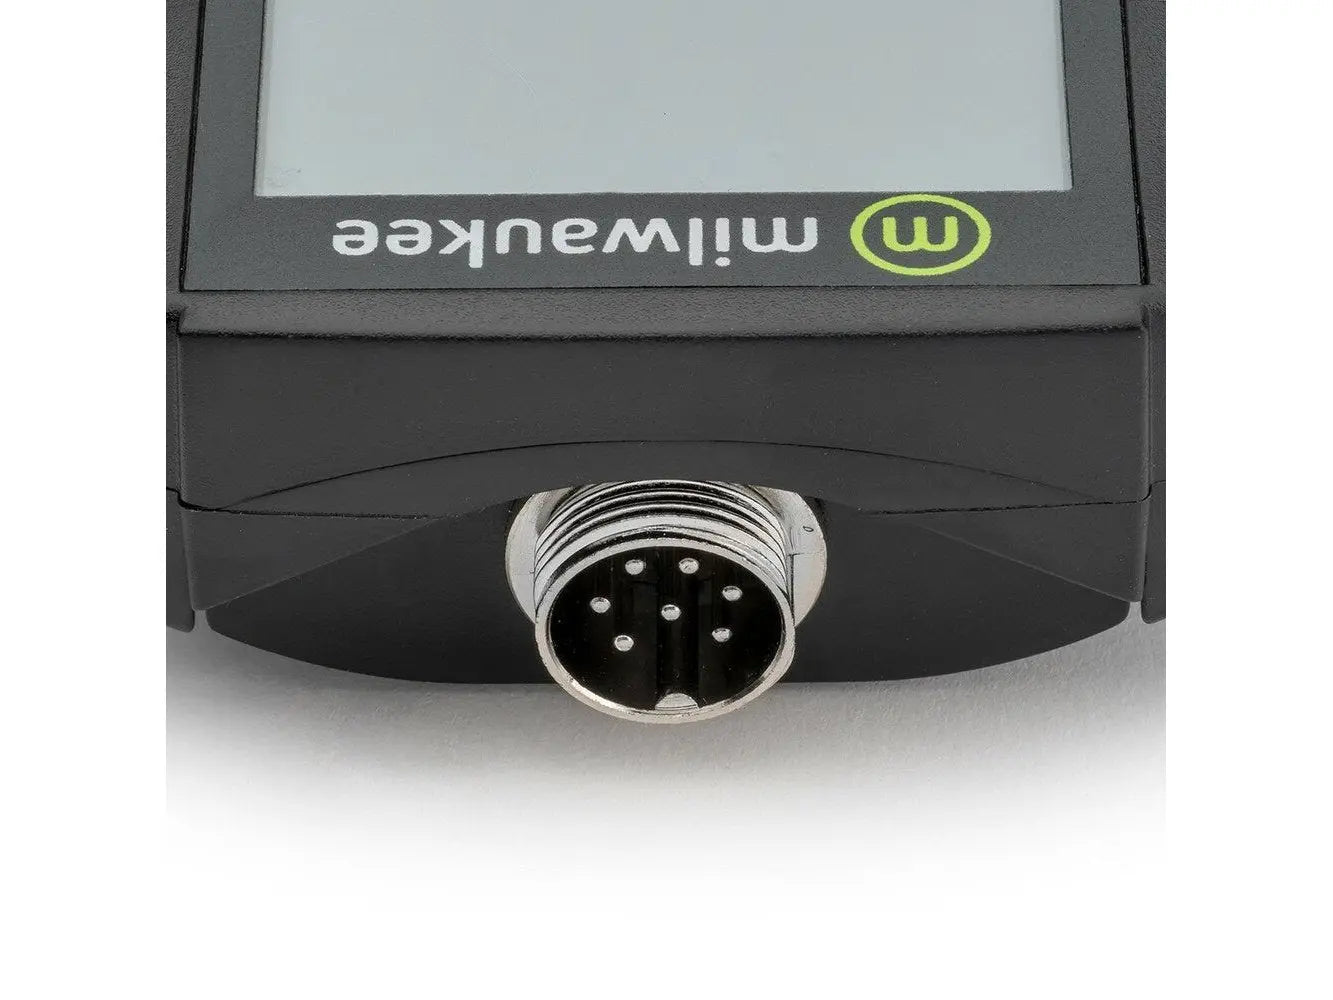 Milwaukee MC120 pH Monitor with Mounting Kit, 0.0 to 14.0 pH, +/-0.2 pH  Accuracy, 5.5 to 9.5 pH Set Point